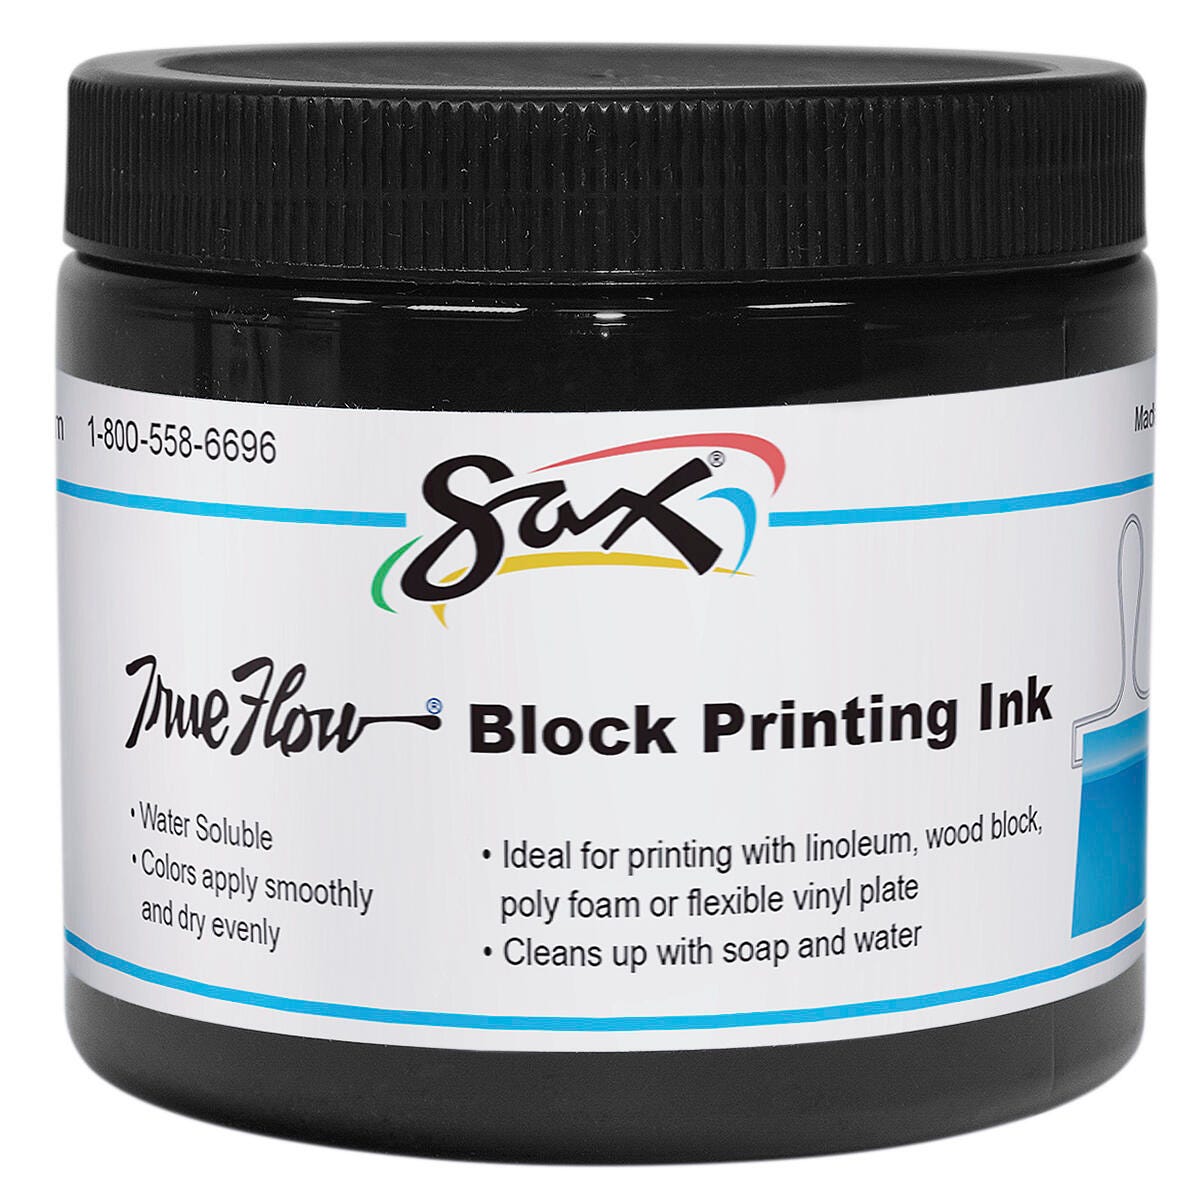 Sax Water Soluble Block Printing Ink, 1 Pint Jar, Black